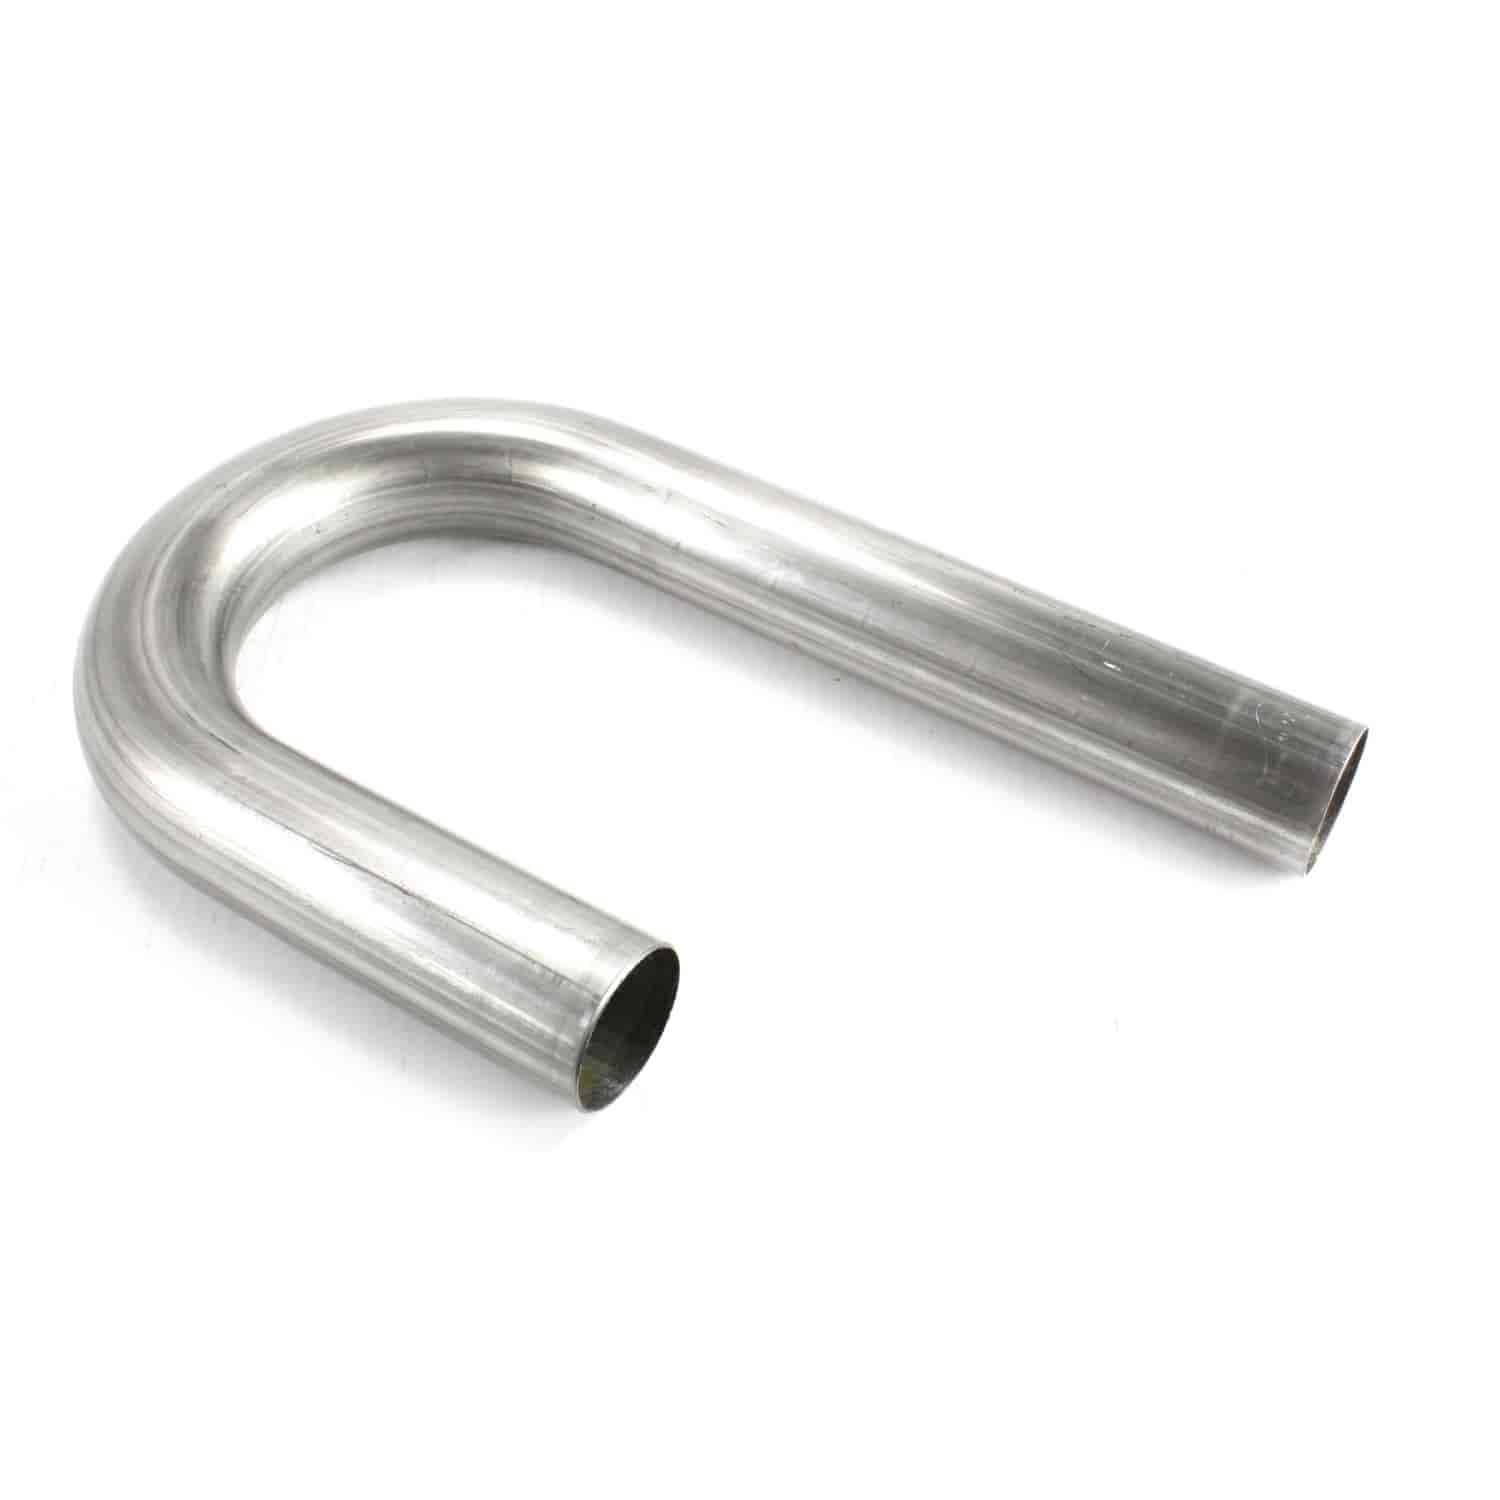 Stainless Steel J-Bend Exhaust Tubing 18 Gauge